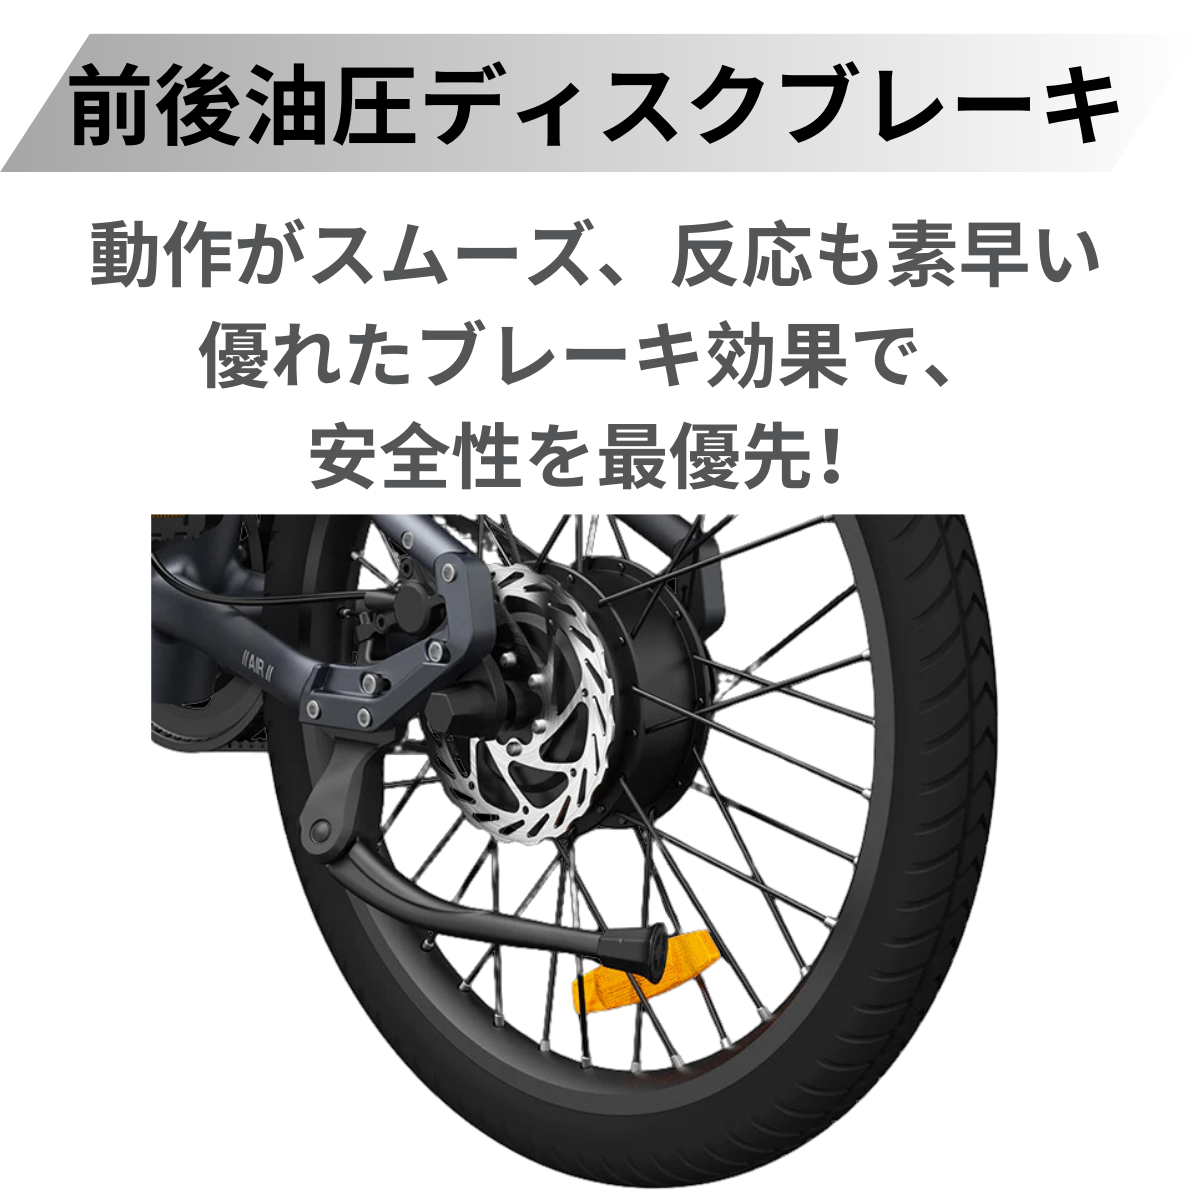 【5/15まで２万円割引！】ADO Air20 ★折り畳み 電動アシスト自転車【試乗可能】